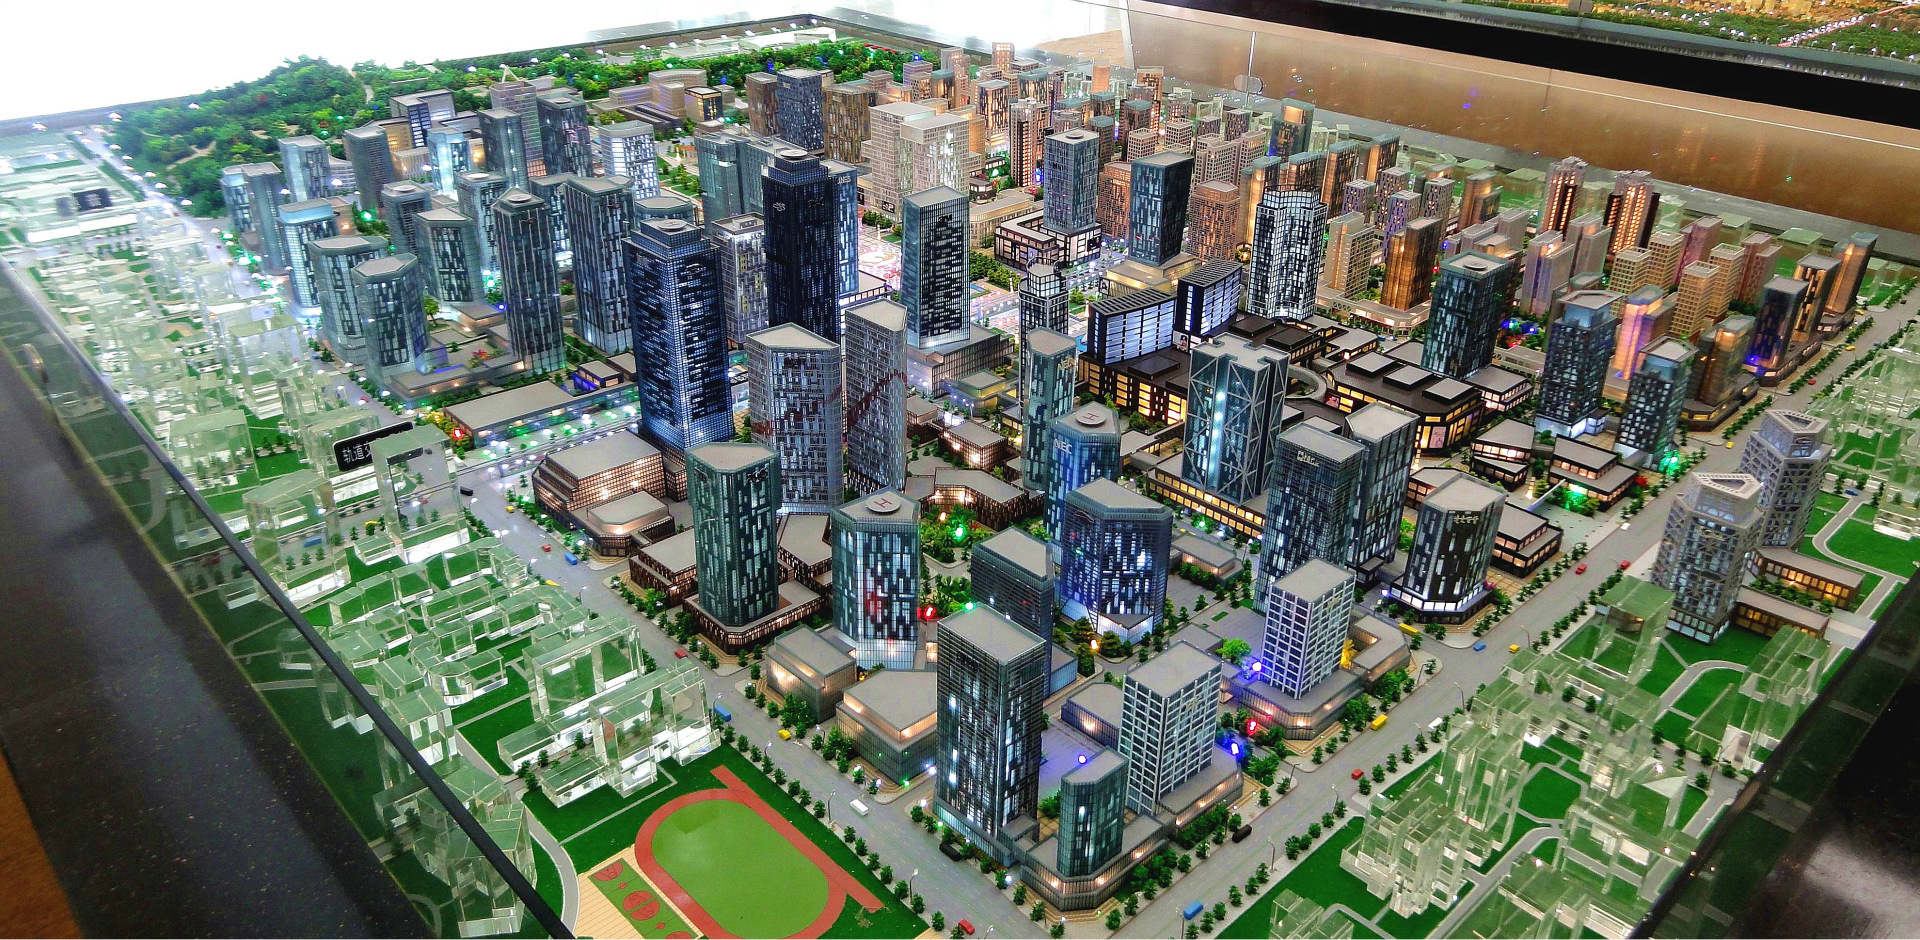 广东省珠海市沙盘制作工厂 3d数字模型设计